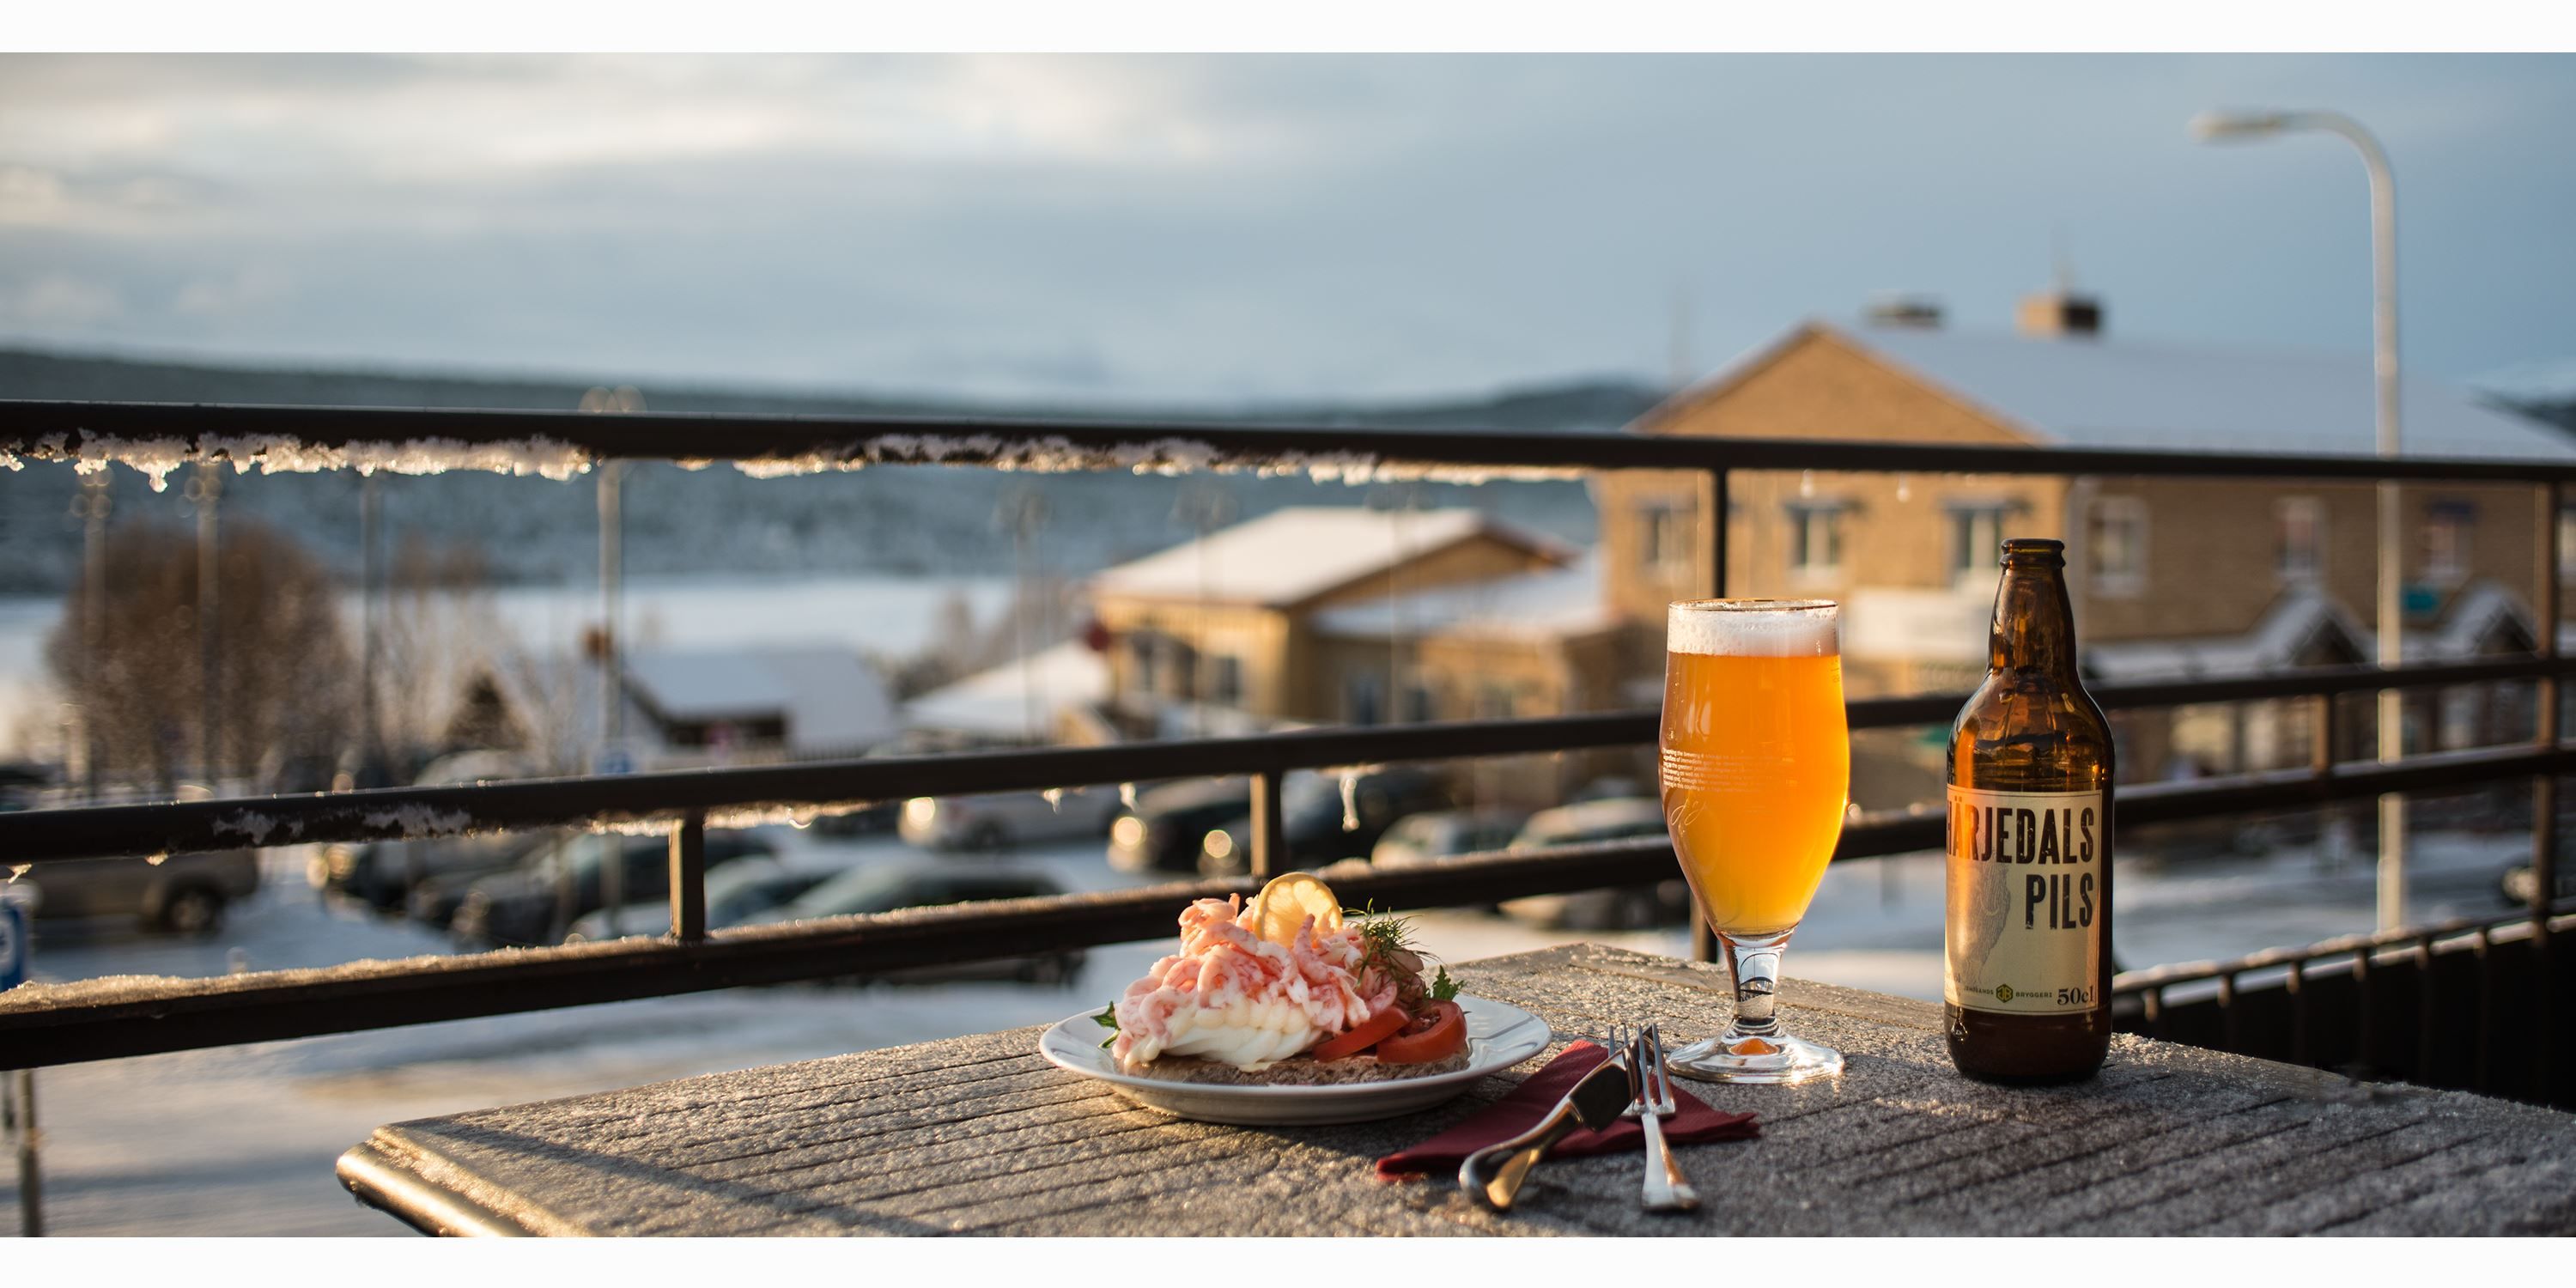 En räksmörgås och ett glas öl på uteservering med utsikt över Funäsdalssjön